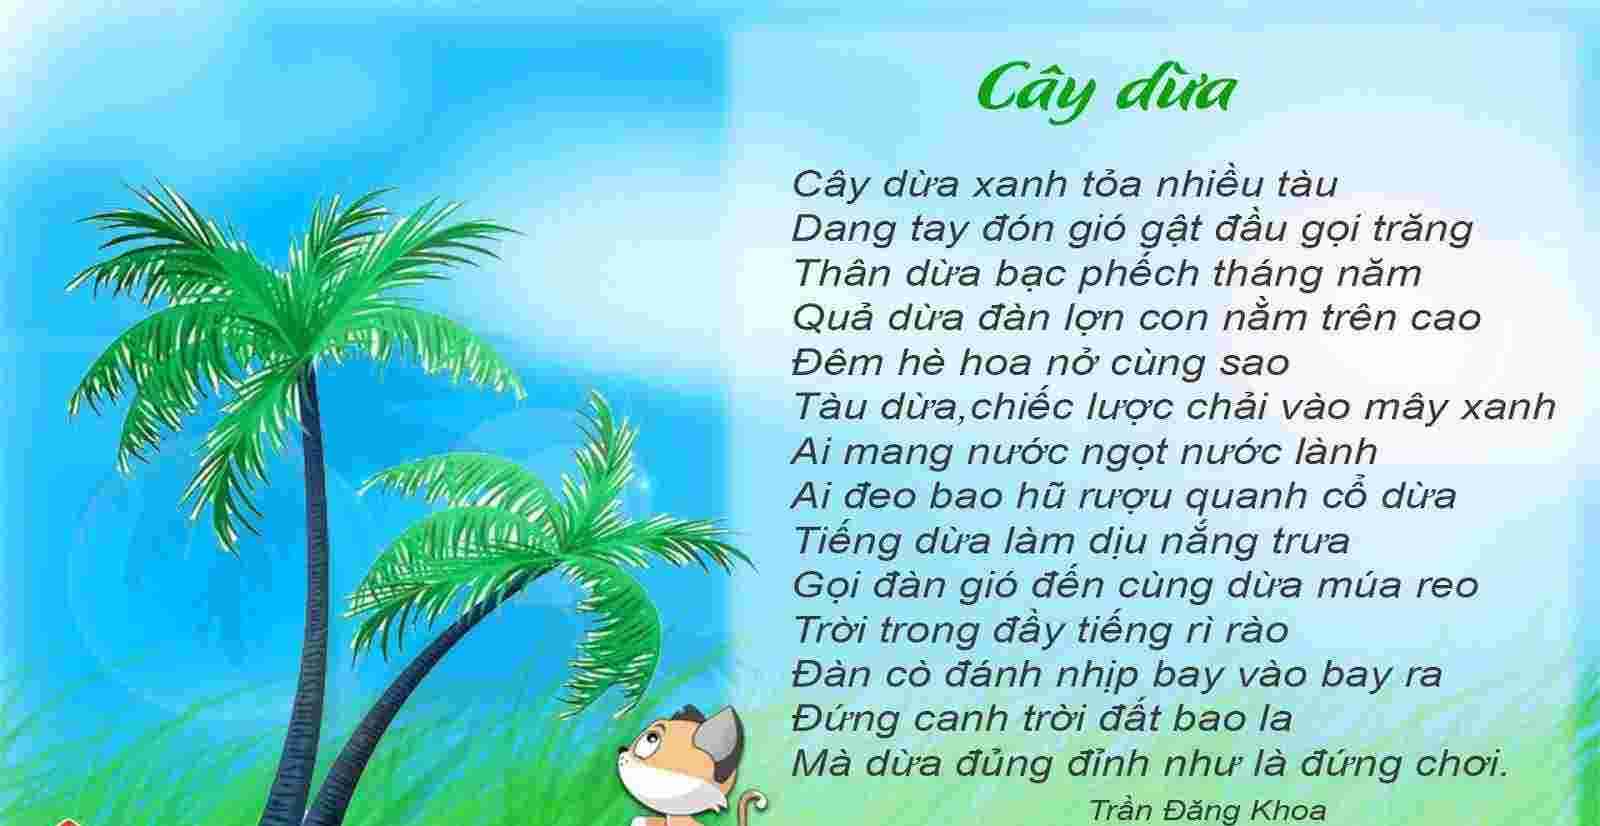 Tranh áng thơ cây dừa